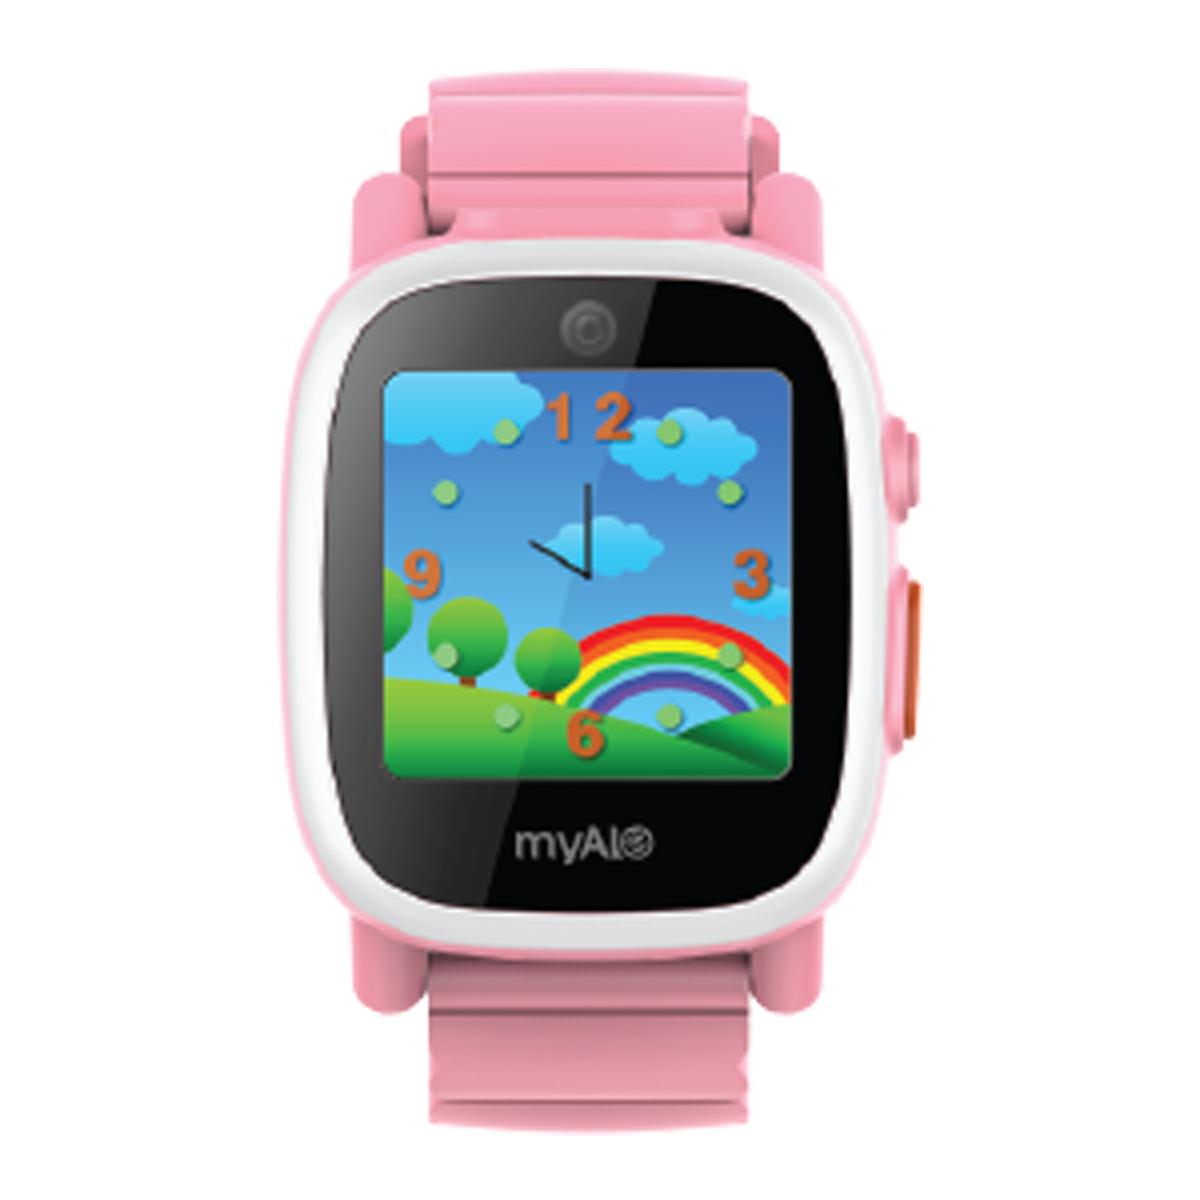 Đồng hồ thông minh định vị trẻ em myAlo KS72C màu hồng